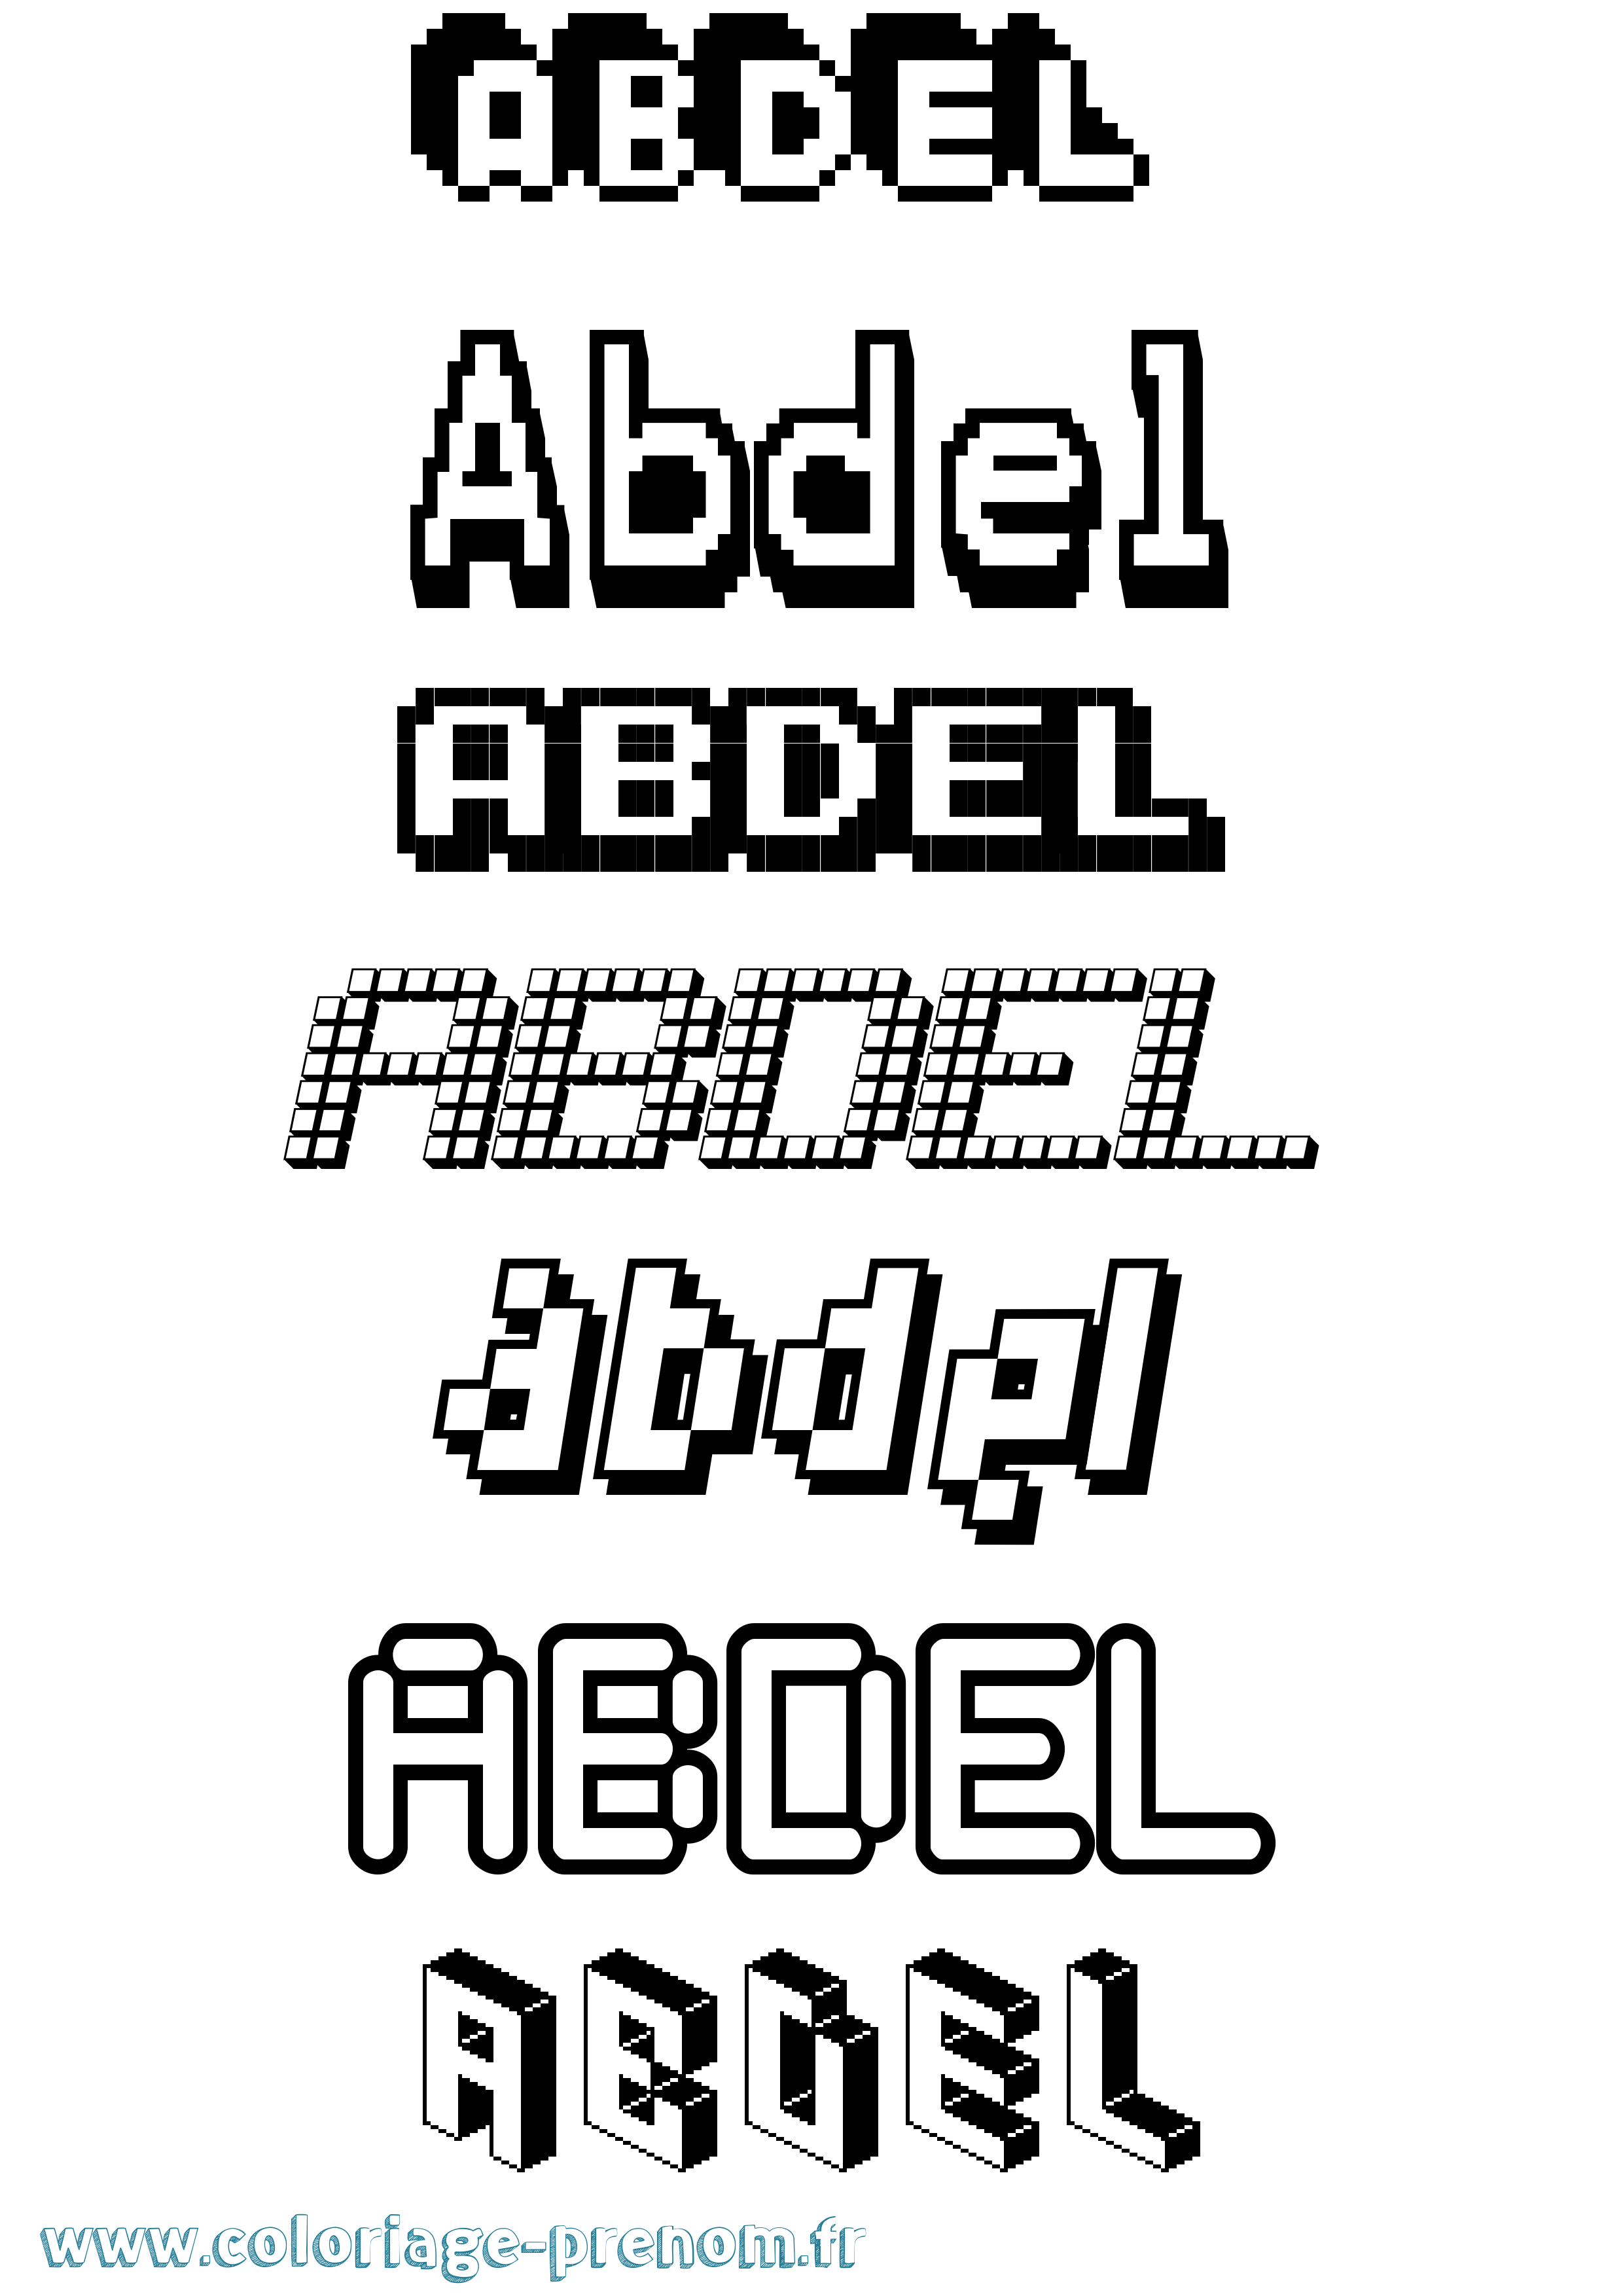 Coloriage prénom Abdel